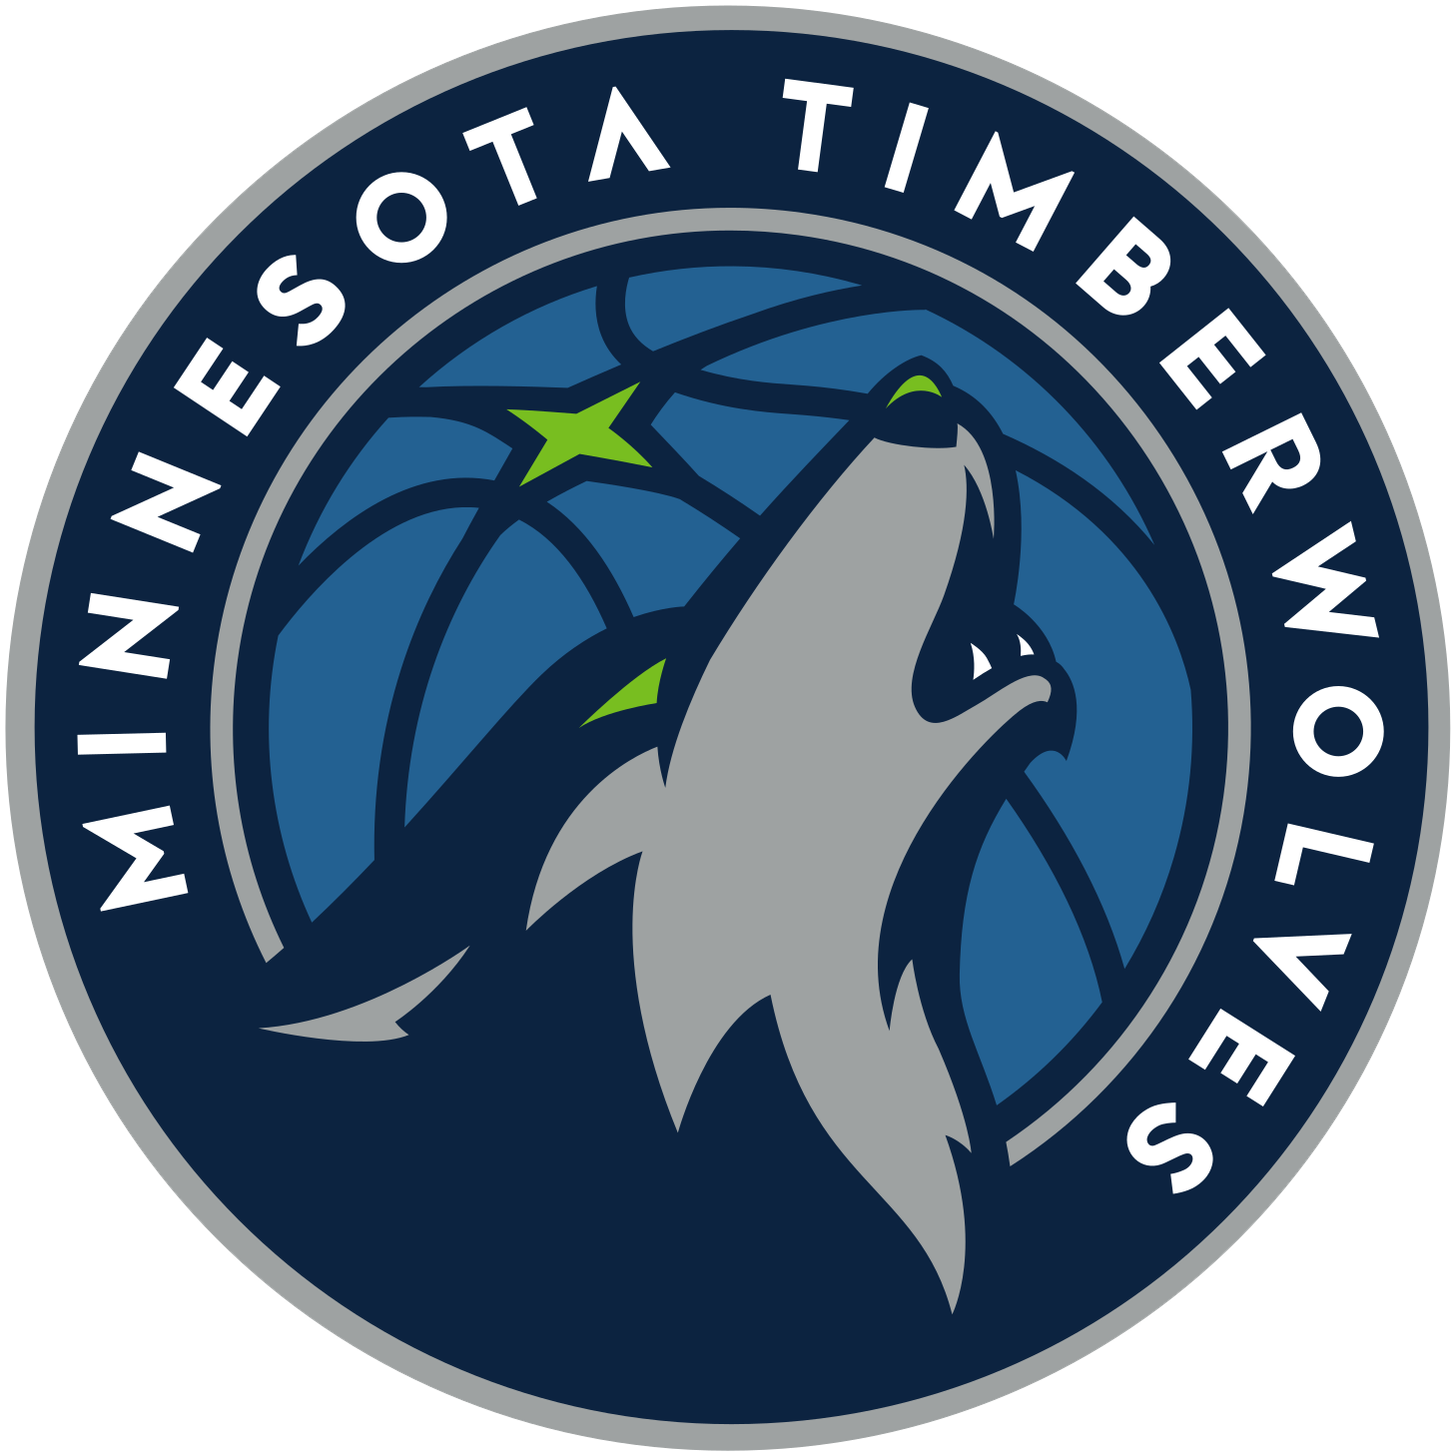 Minnesota Timberwolves - Wikipedia